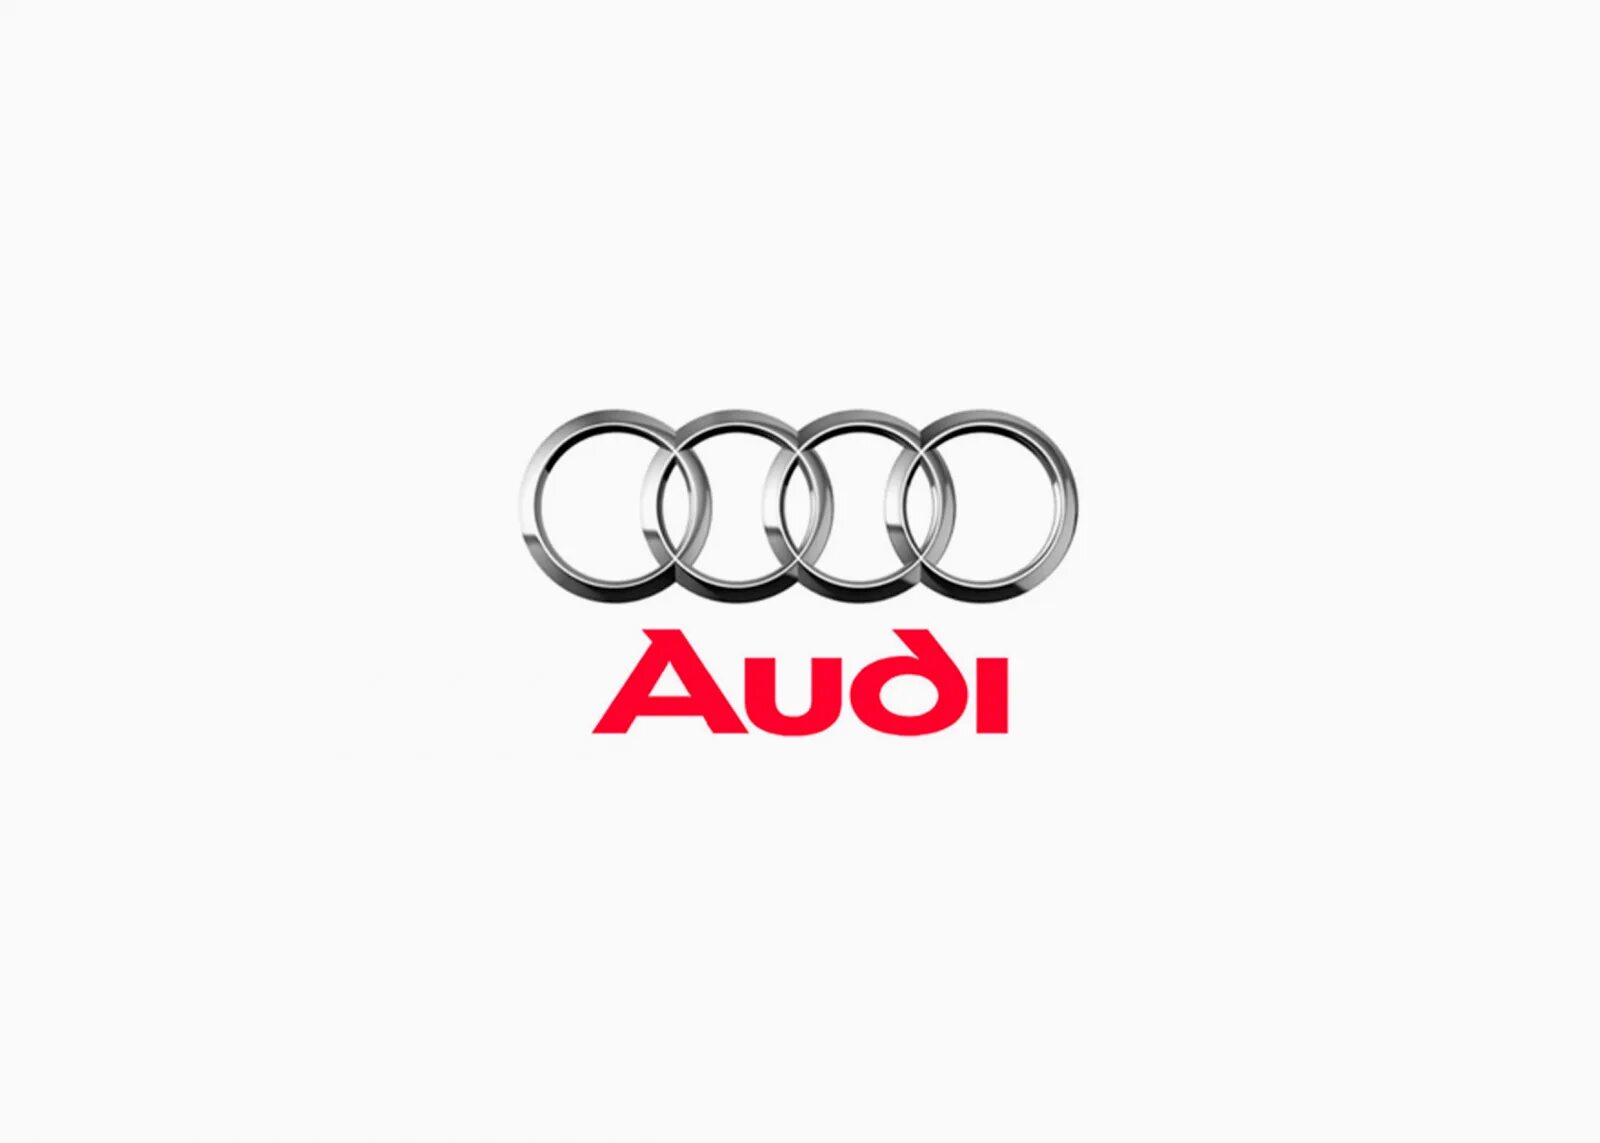 Слоган ауди. История эмблемы Ауди. Audi a6 логотип. Первая эмблема Ауди. Эволюция логотипа Audi.